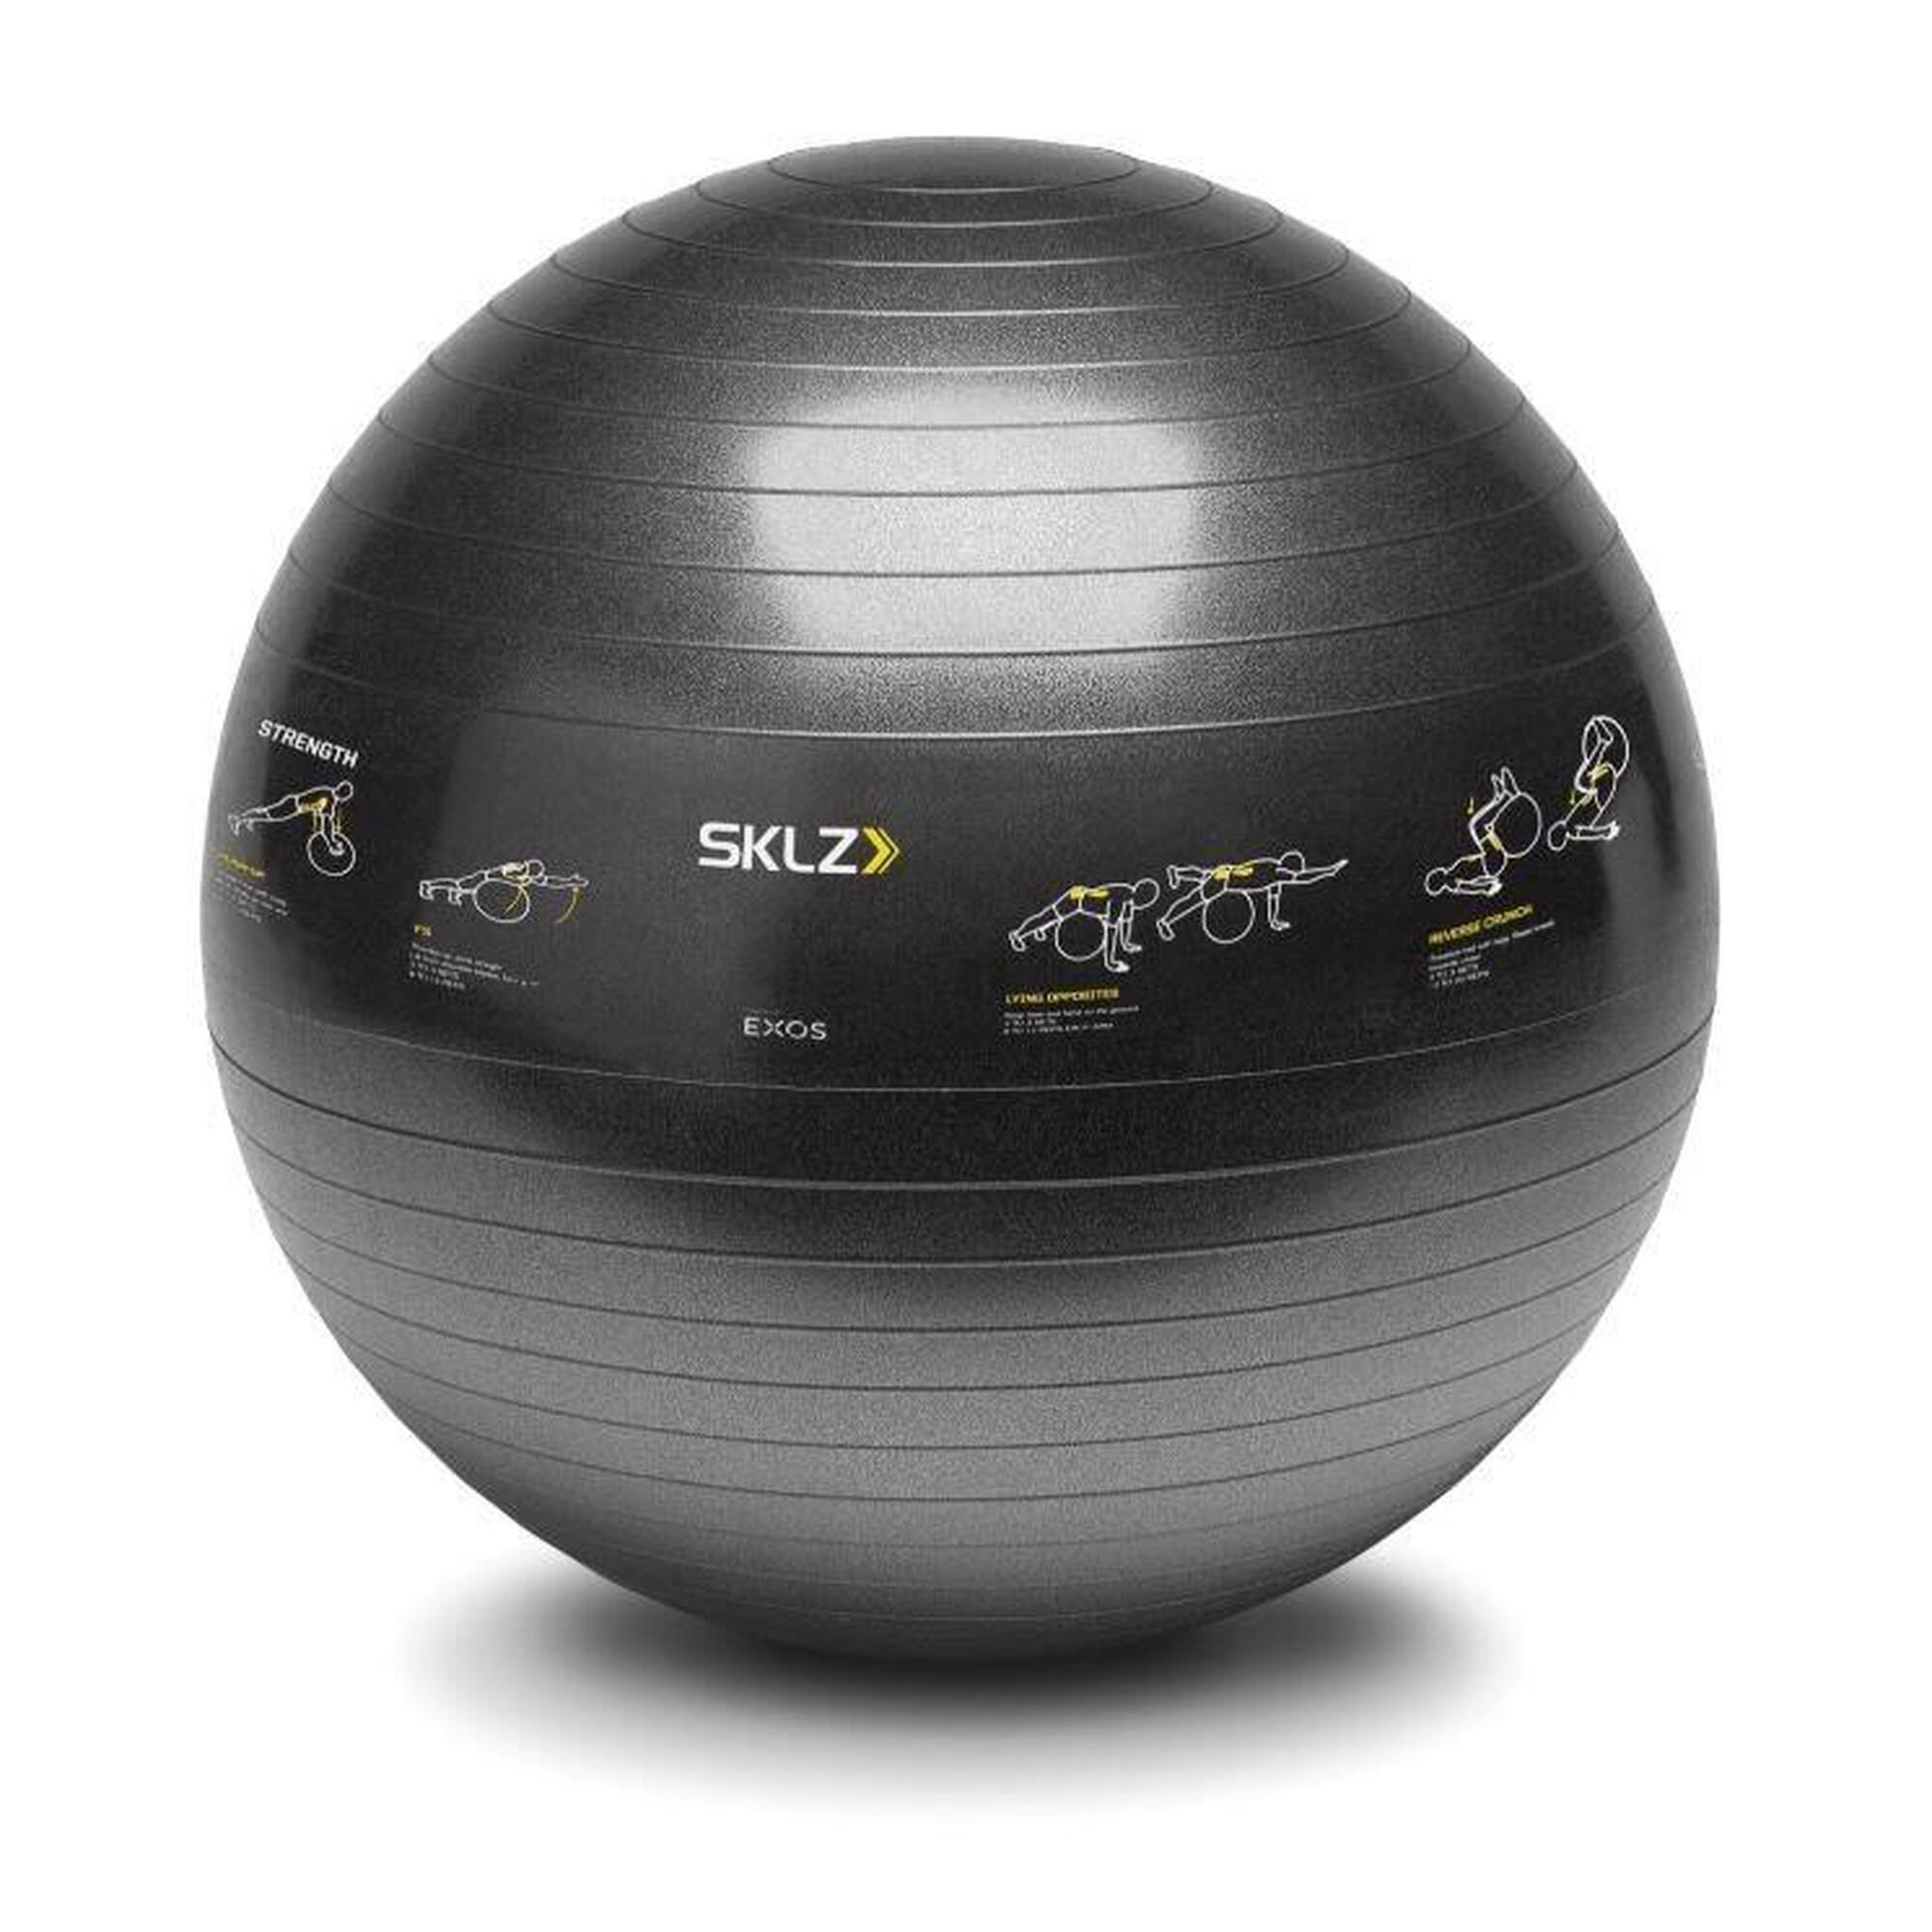 Bola de treino Swiss Fitness Ball SKLZ